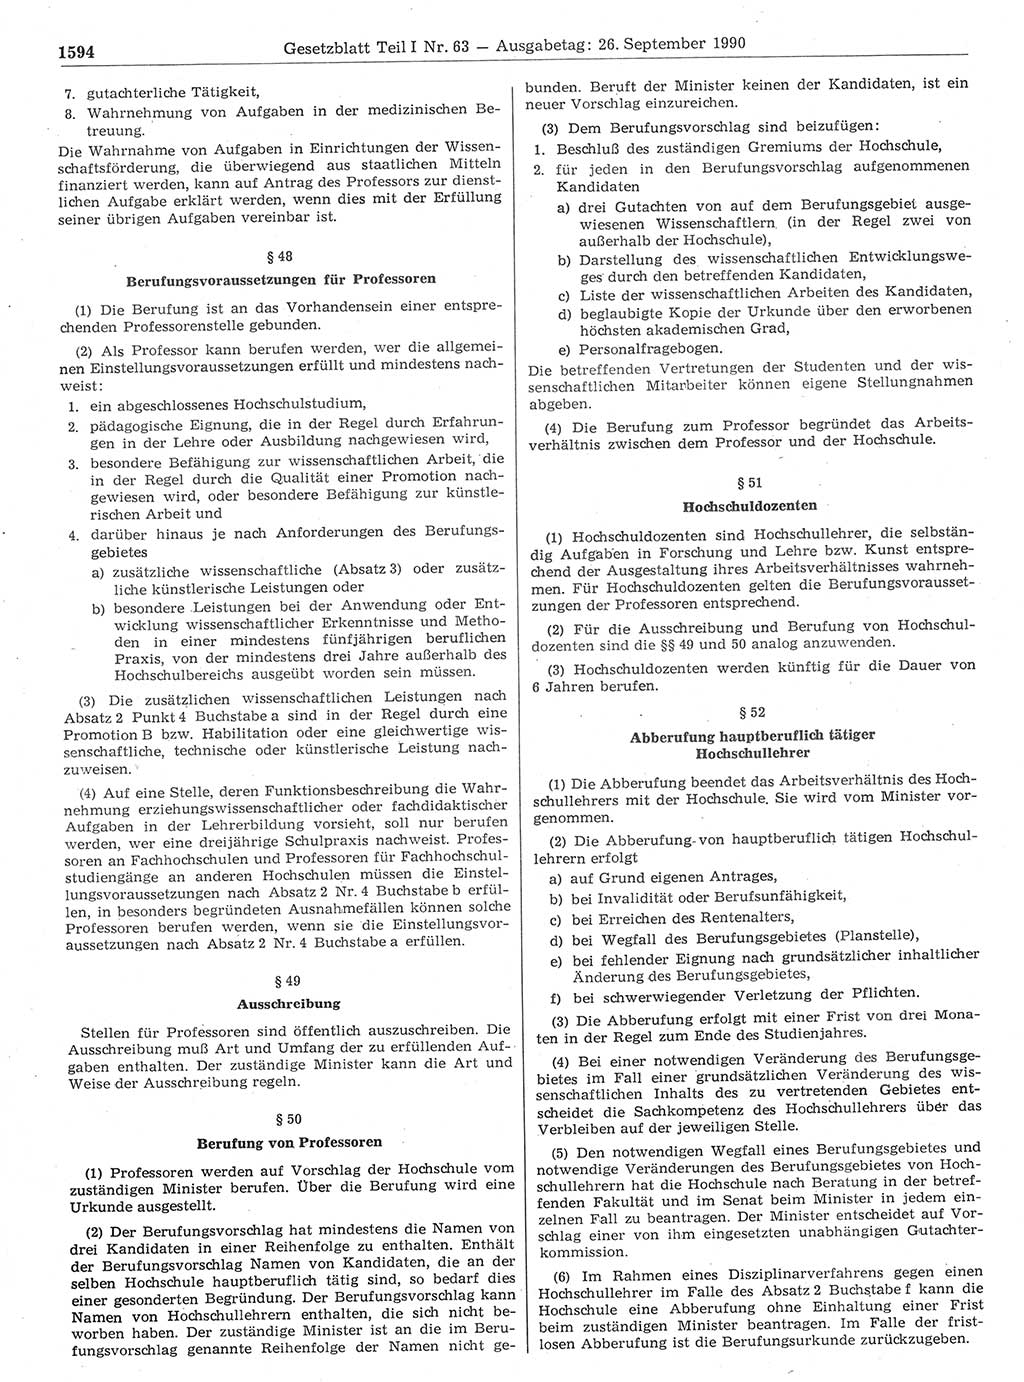 Gesetzblatt (GBl.) der Deutschen Demokratischen Republik (DDR) Teil Ⅰ 1990, Seite 1594 (GBl. DDR Ⅰ 1990, S. 1594)